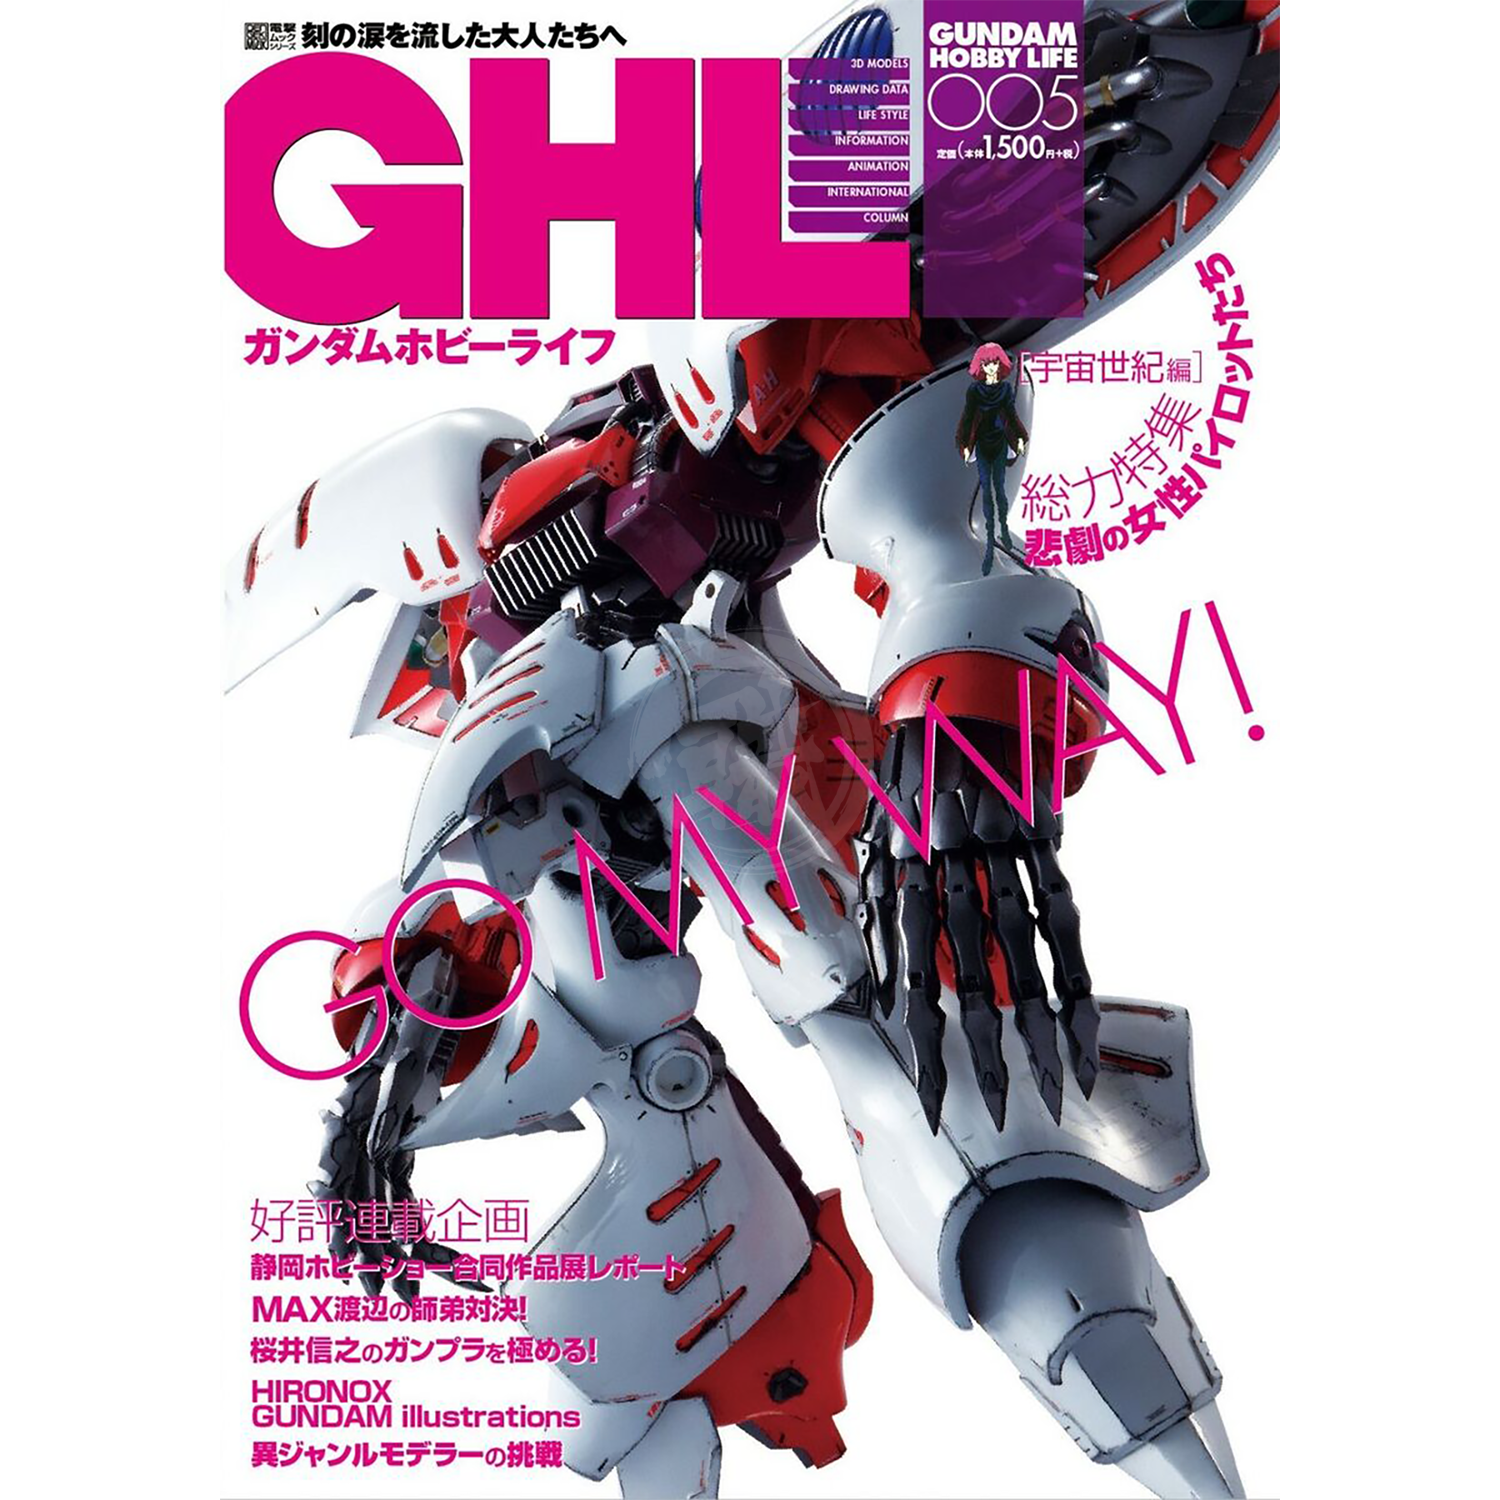 ASCII Media Works - Gundam Hobby Life [Volume 005] - ShokuninGunpla